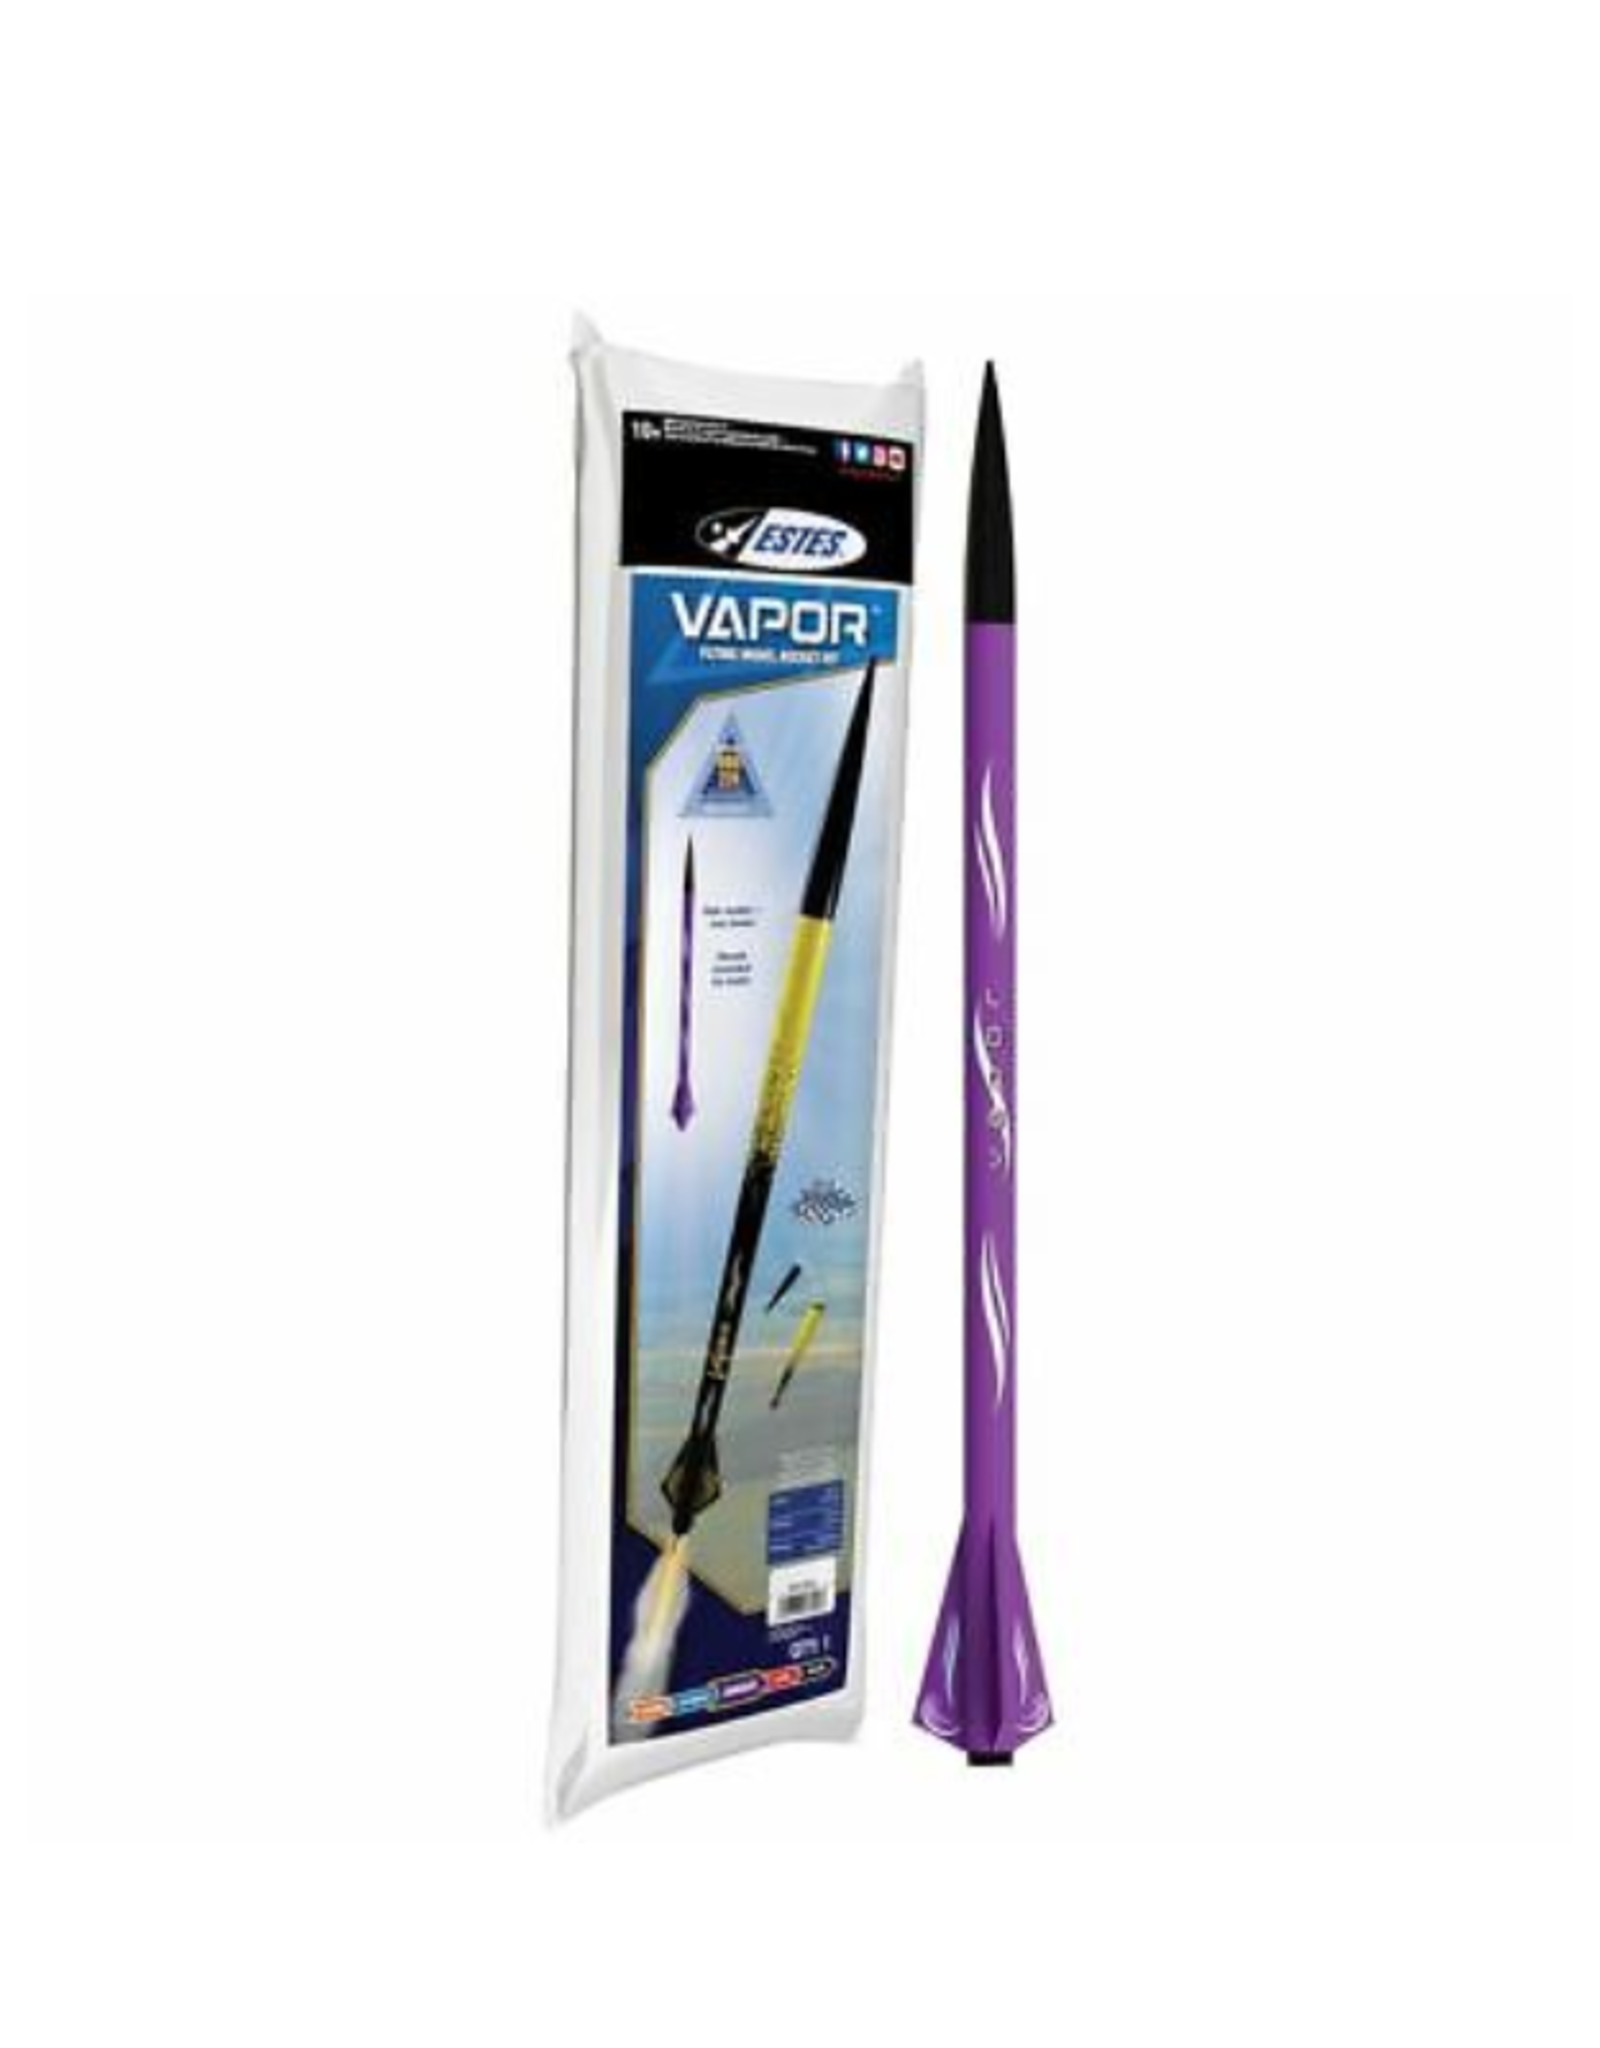 Vapor Rocket Kit